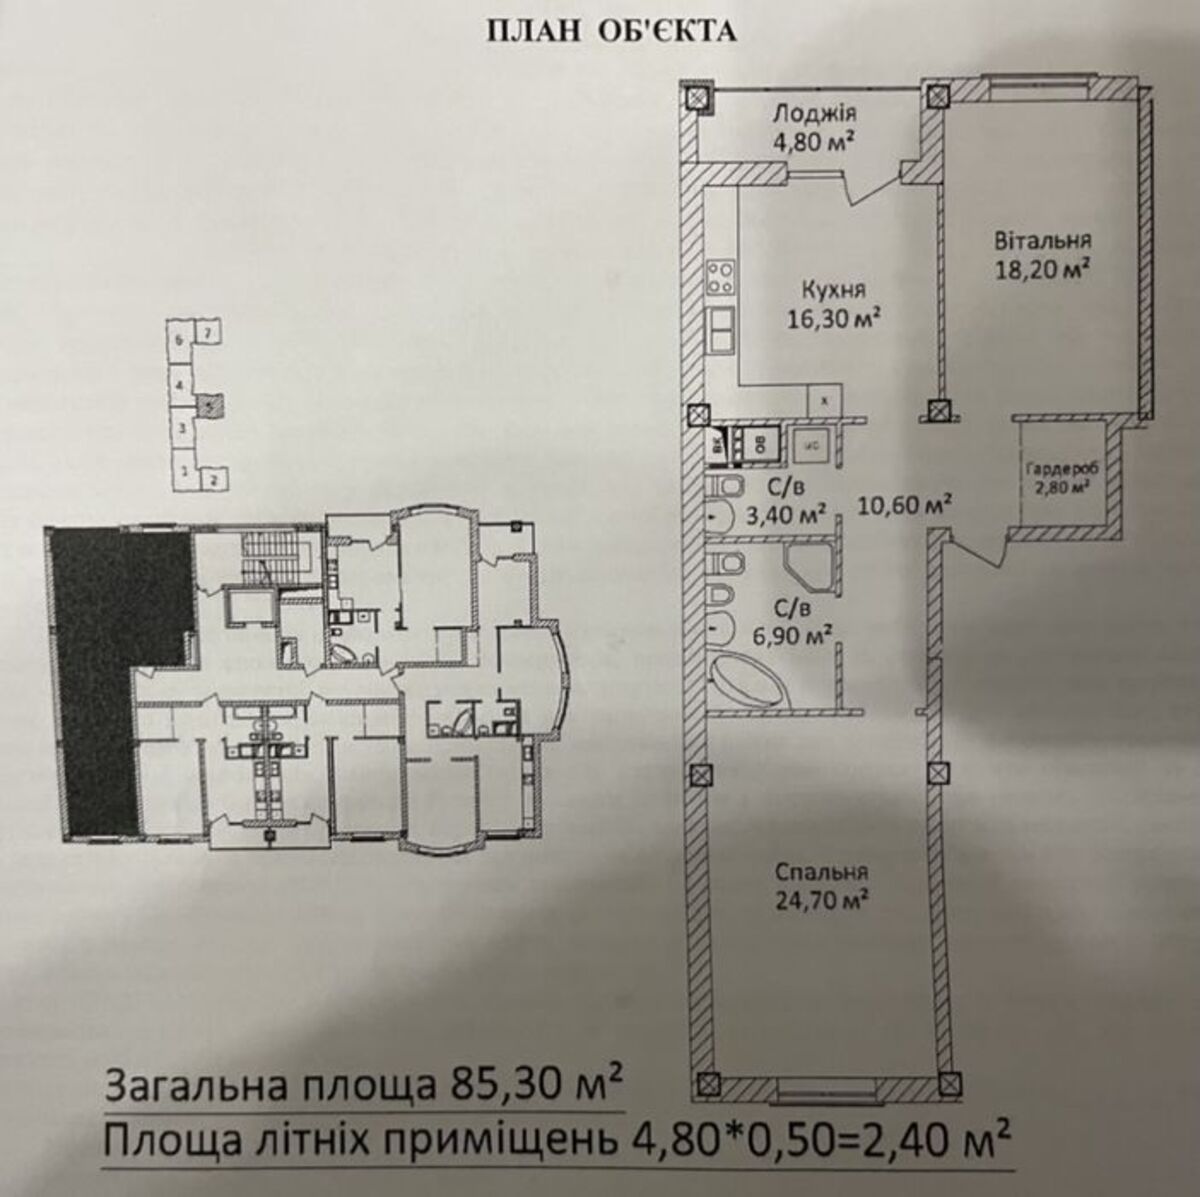 2-комнатная квартира на Еврейской в Чайной Фабрике.